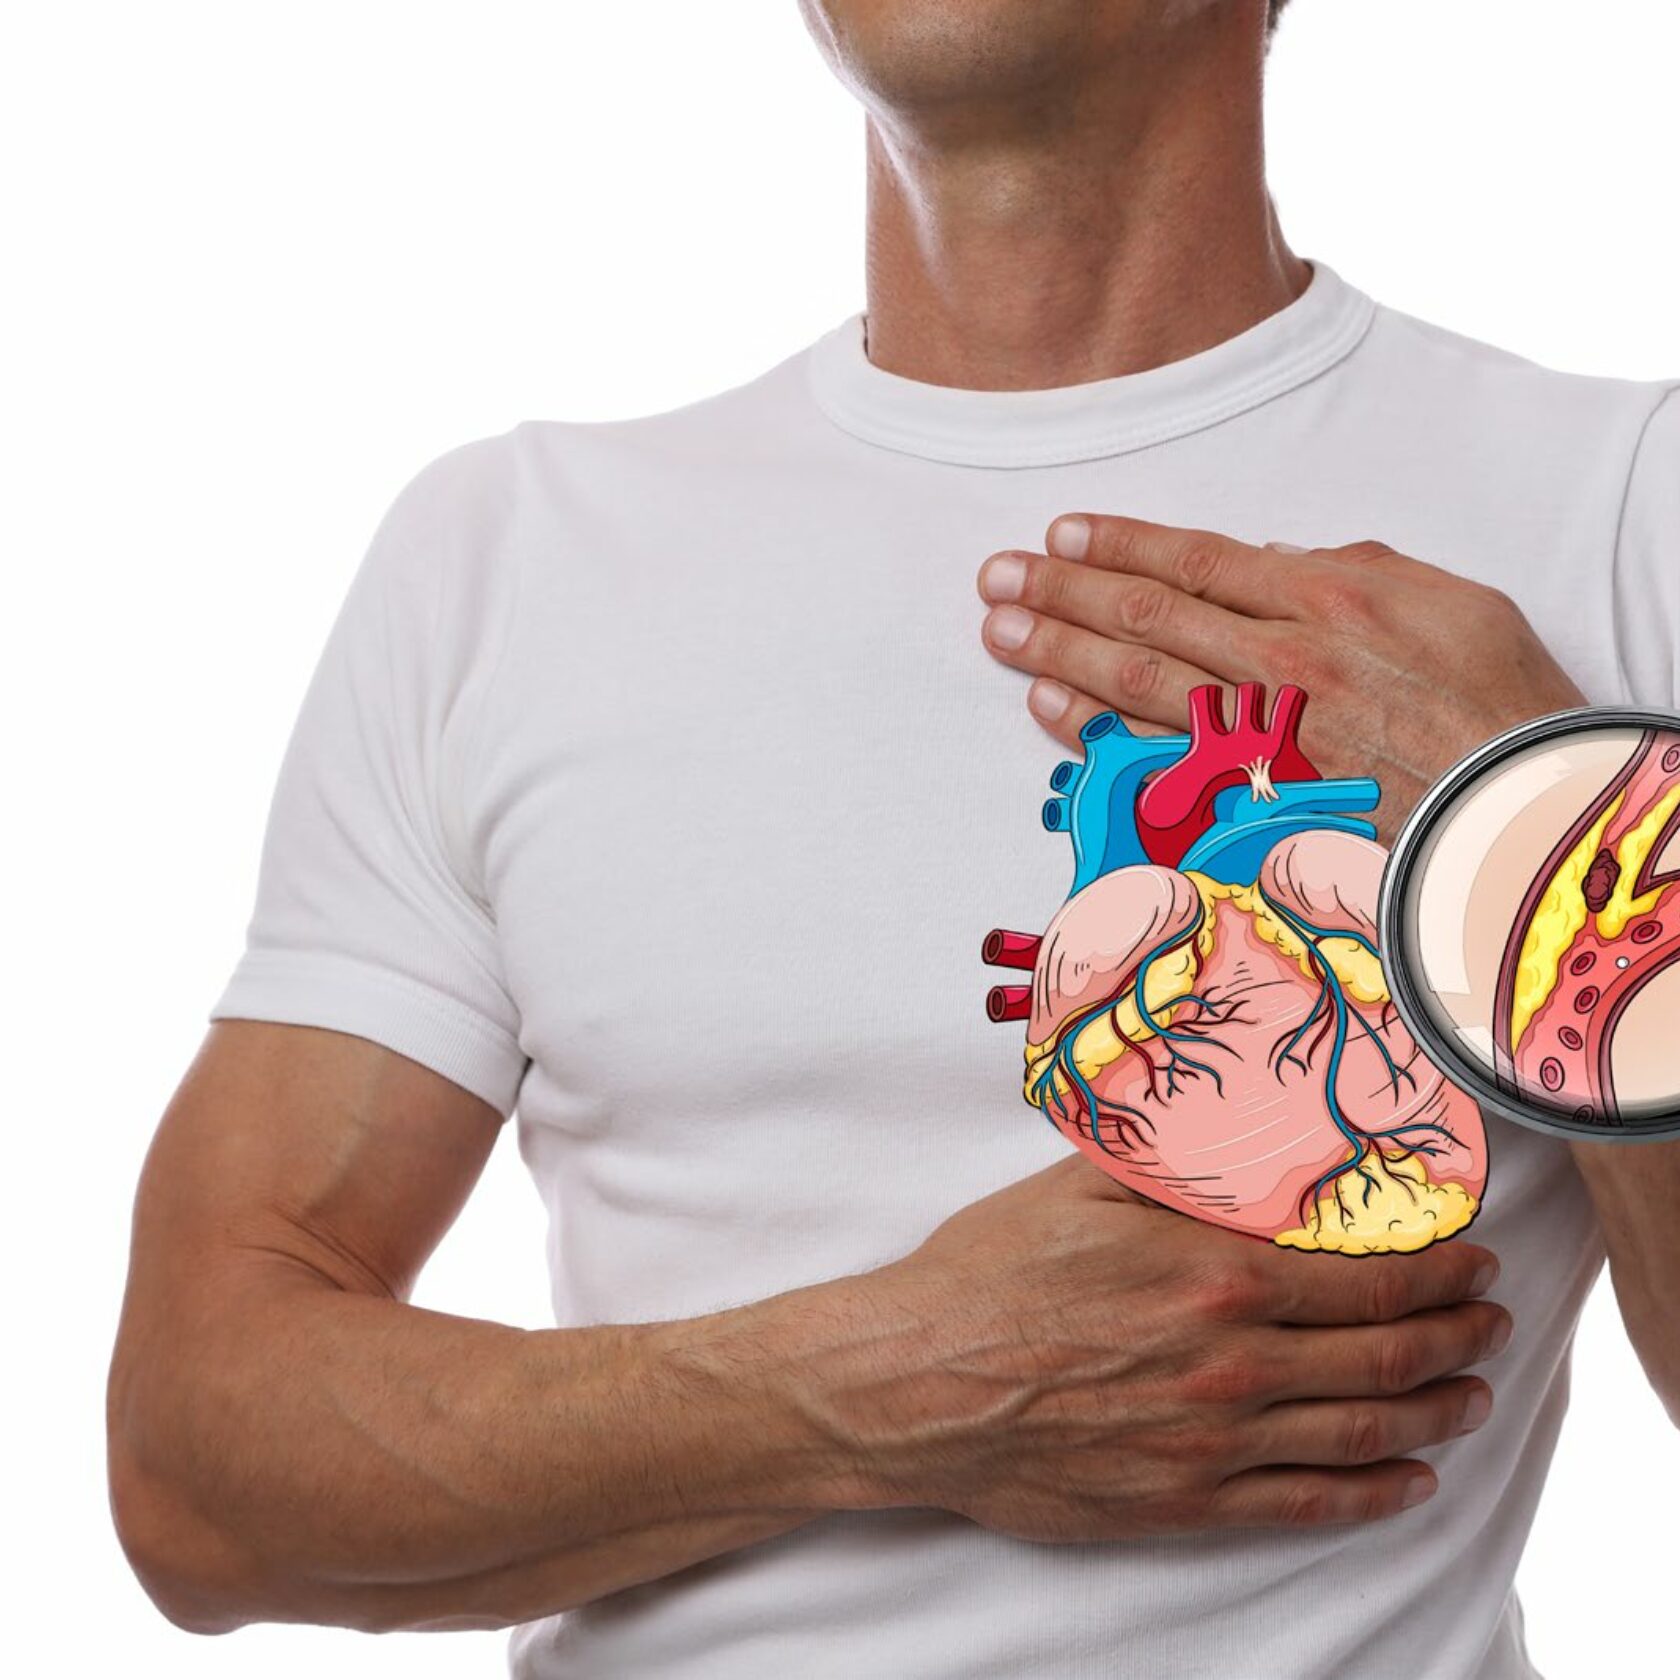 Herzgefäße vor männlicher Brust in Detaildarstellung